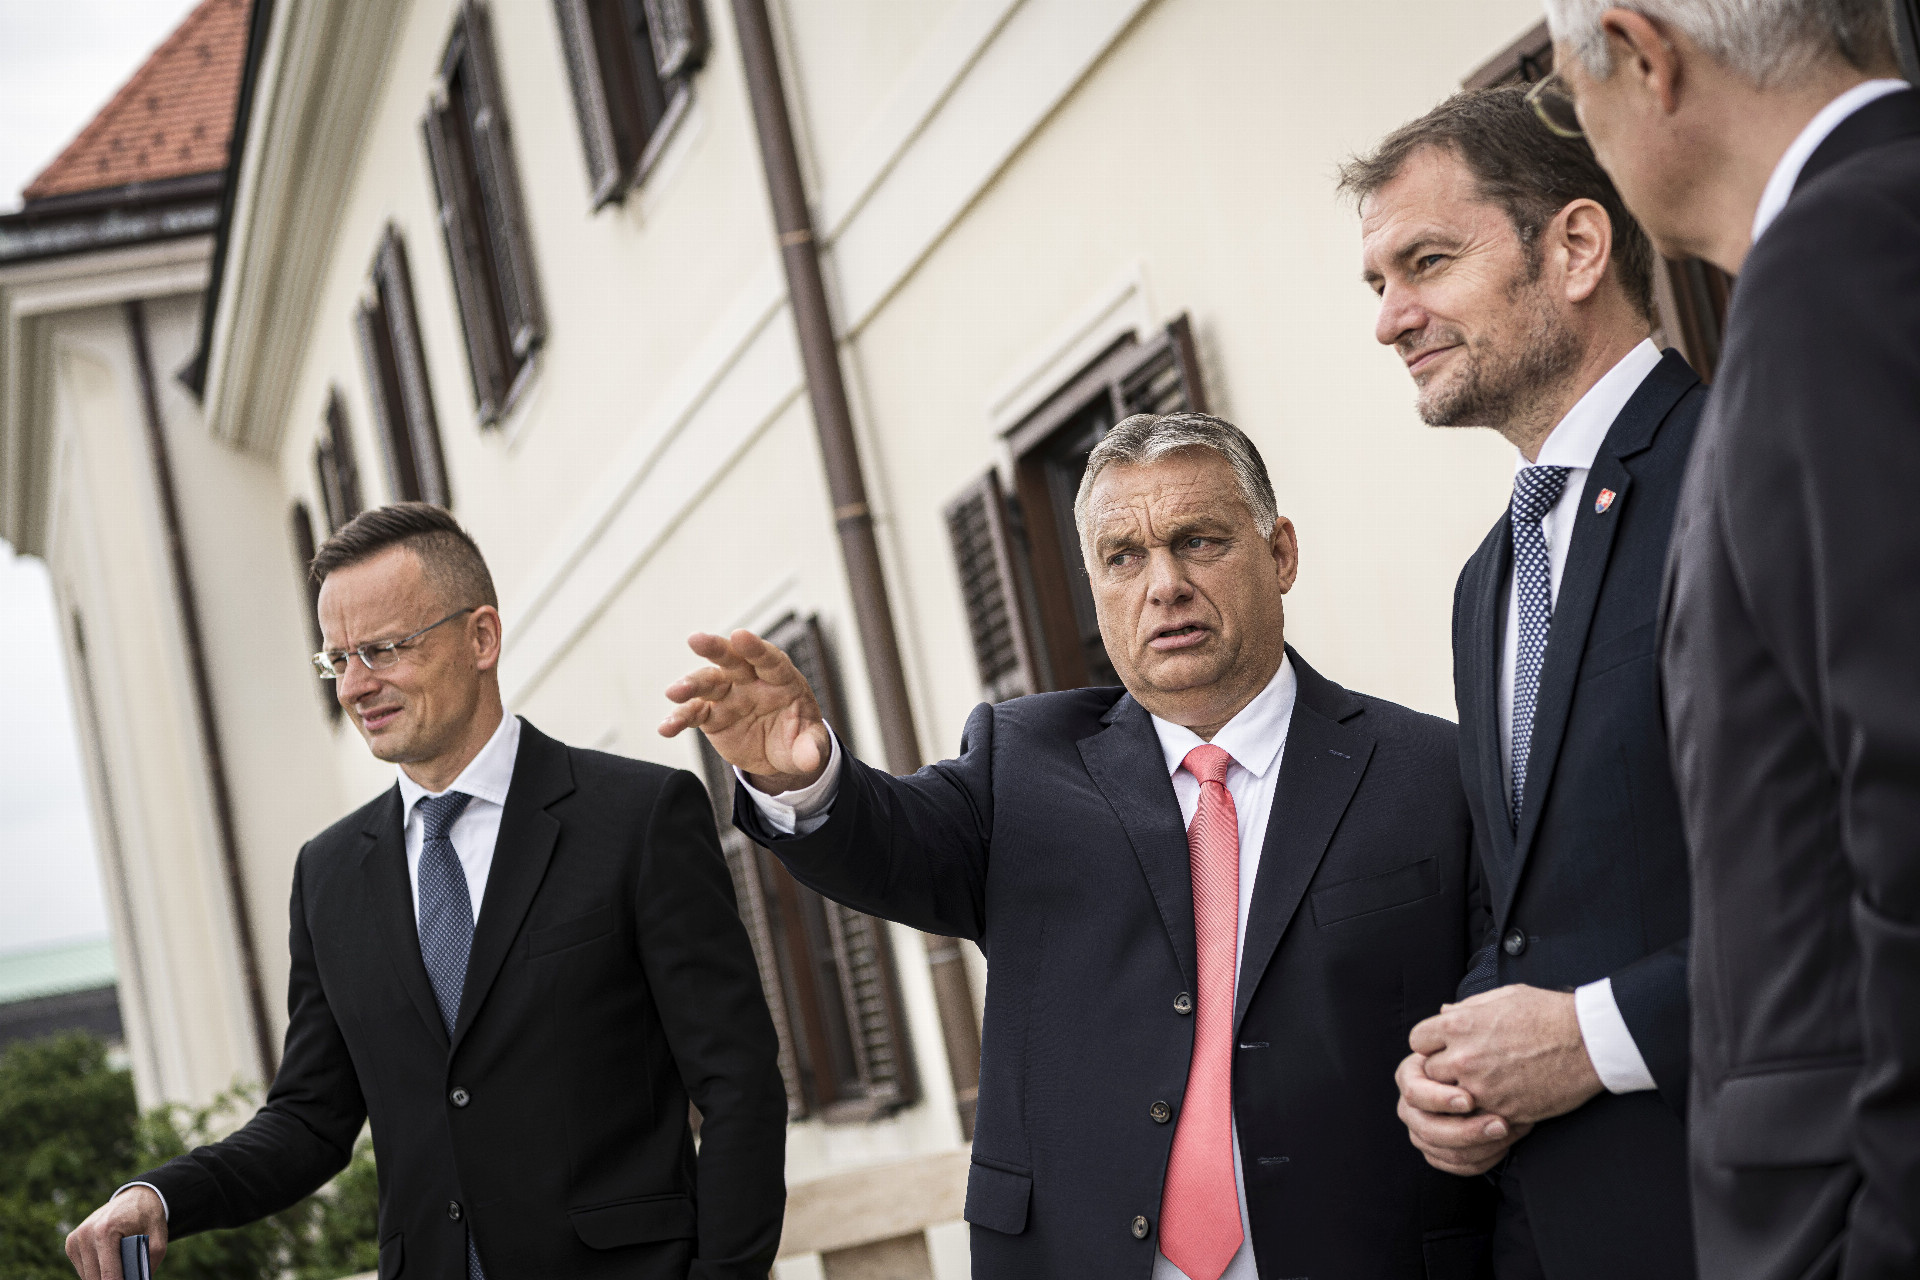 Spoločnú reč počas návštevy v Budapešti našli nielen premiéri Viktor Orbán a Igor Matovič, ale aj šéfovia diplomacií Péter Szijjártó (vľavo) a Ivan Korčok.